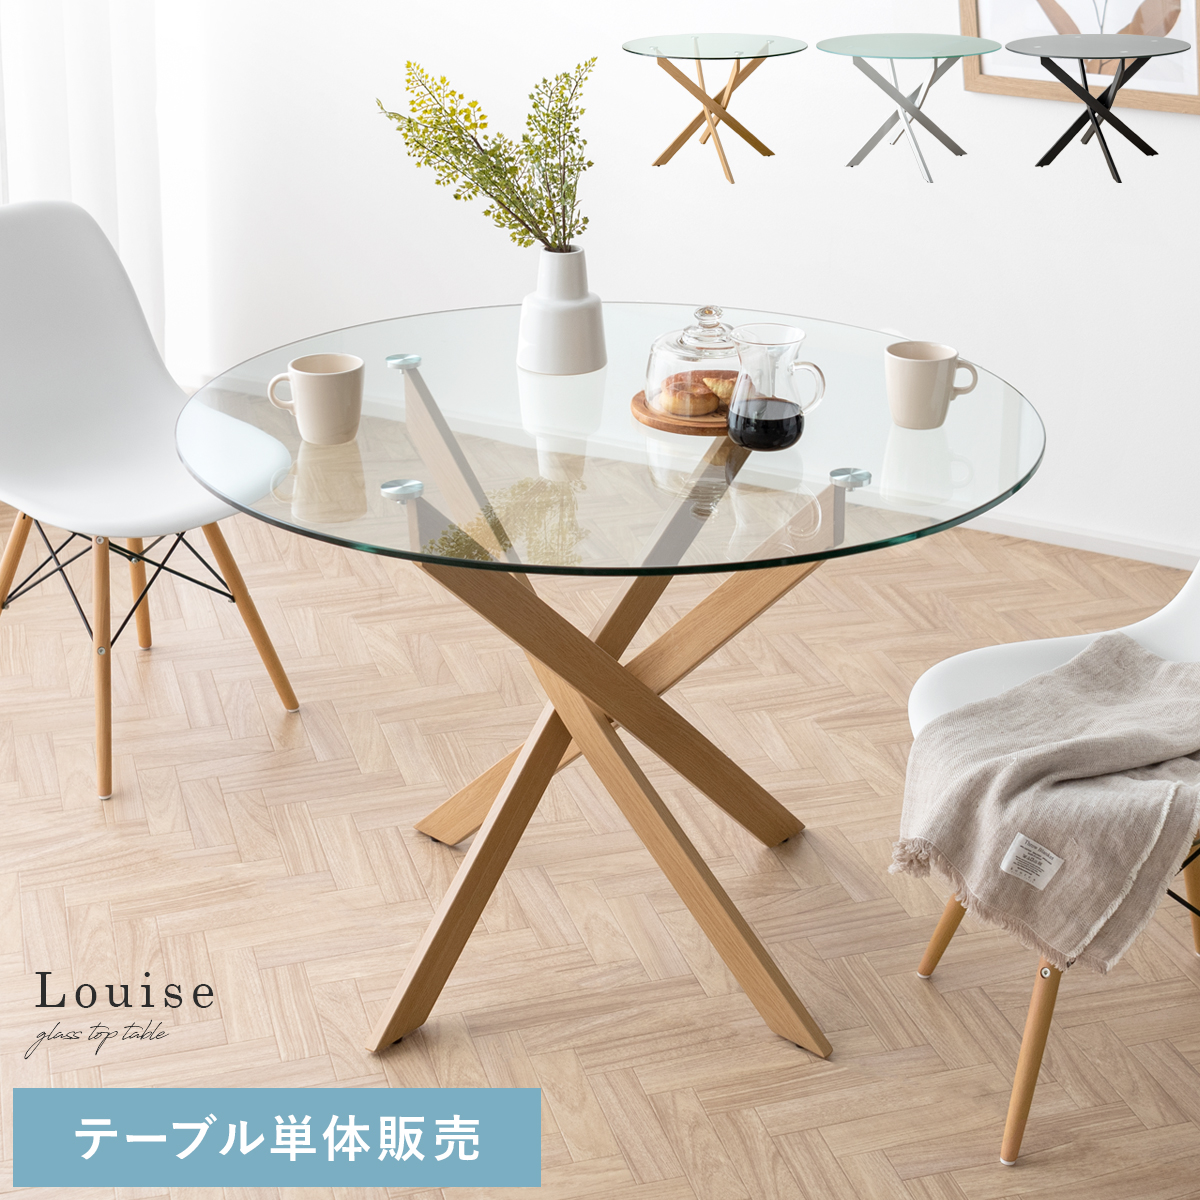 円形ガラスダイニングテーブル Louise(ルイーズ) 【公式】 エア・リゾーム インテリア・家具通販